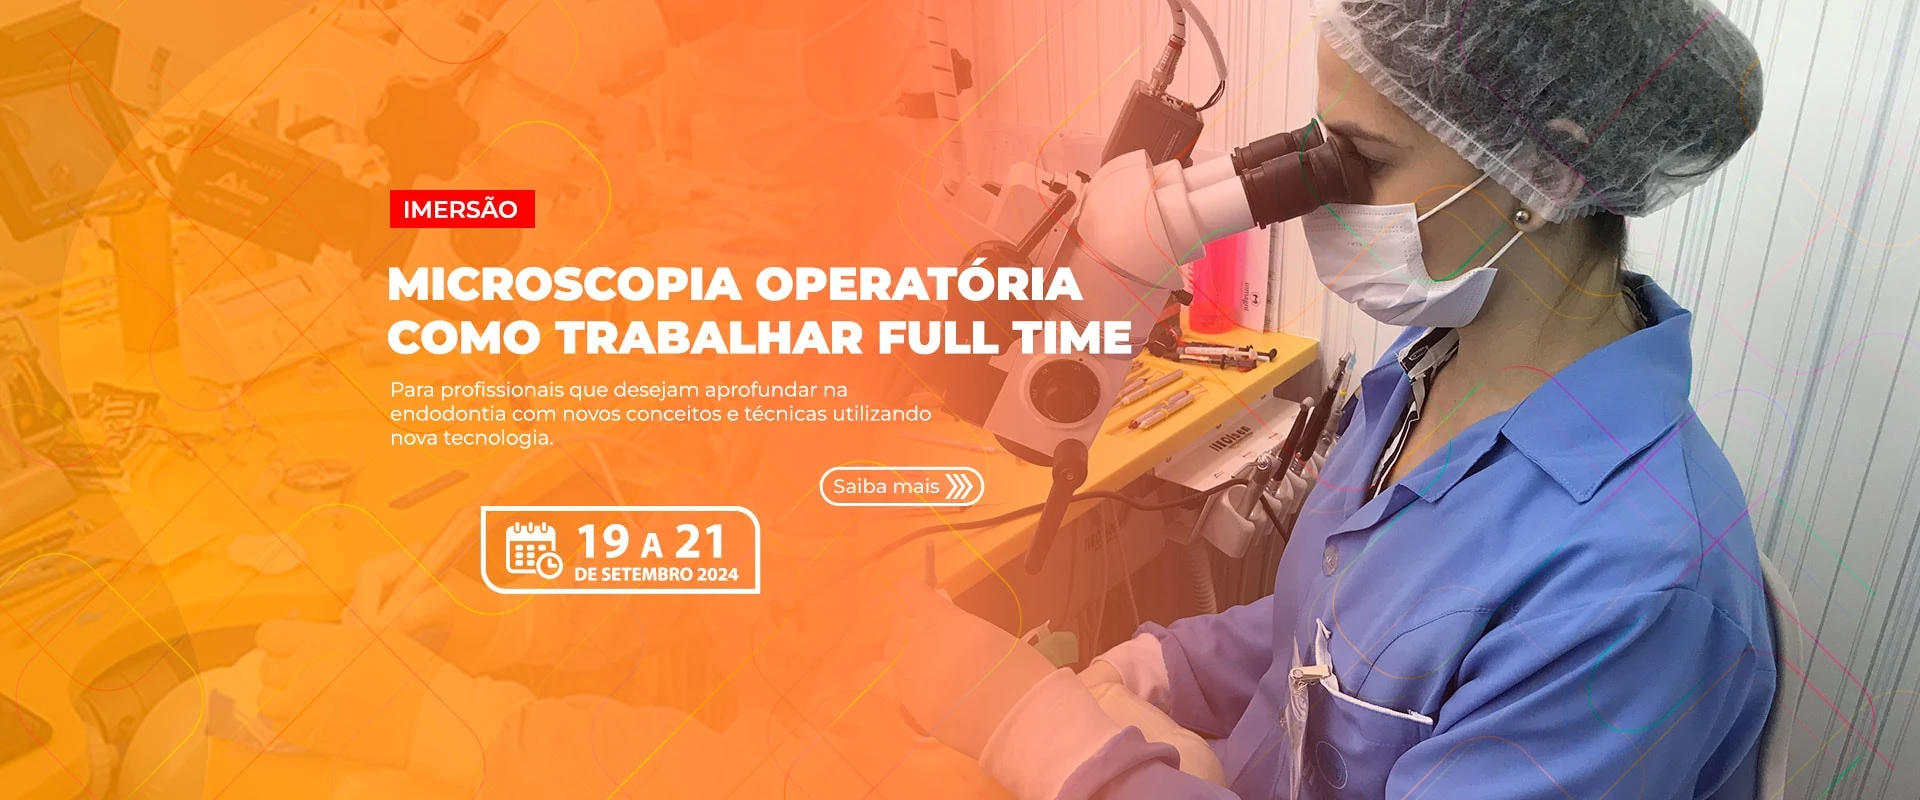 19.08.24 - Curso de Microscopia Operatória - Como Trabalhar Full Time - Imersão